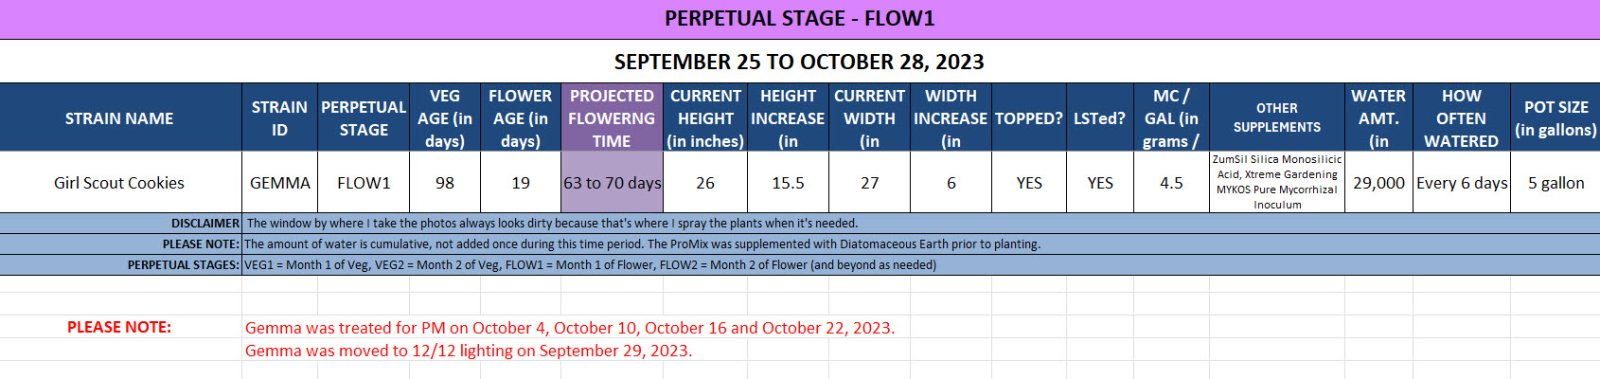 420 Update for Gemma - September 25 to October 28, 2023.jpg